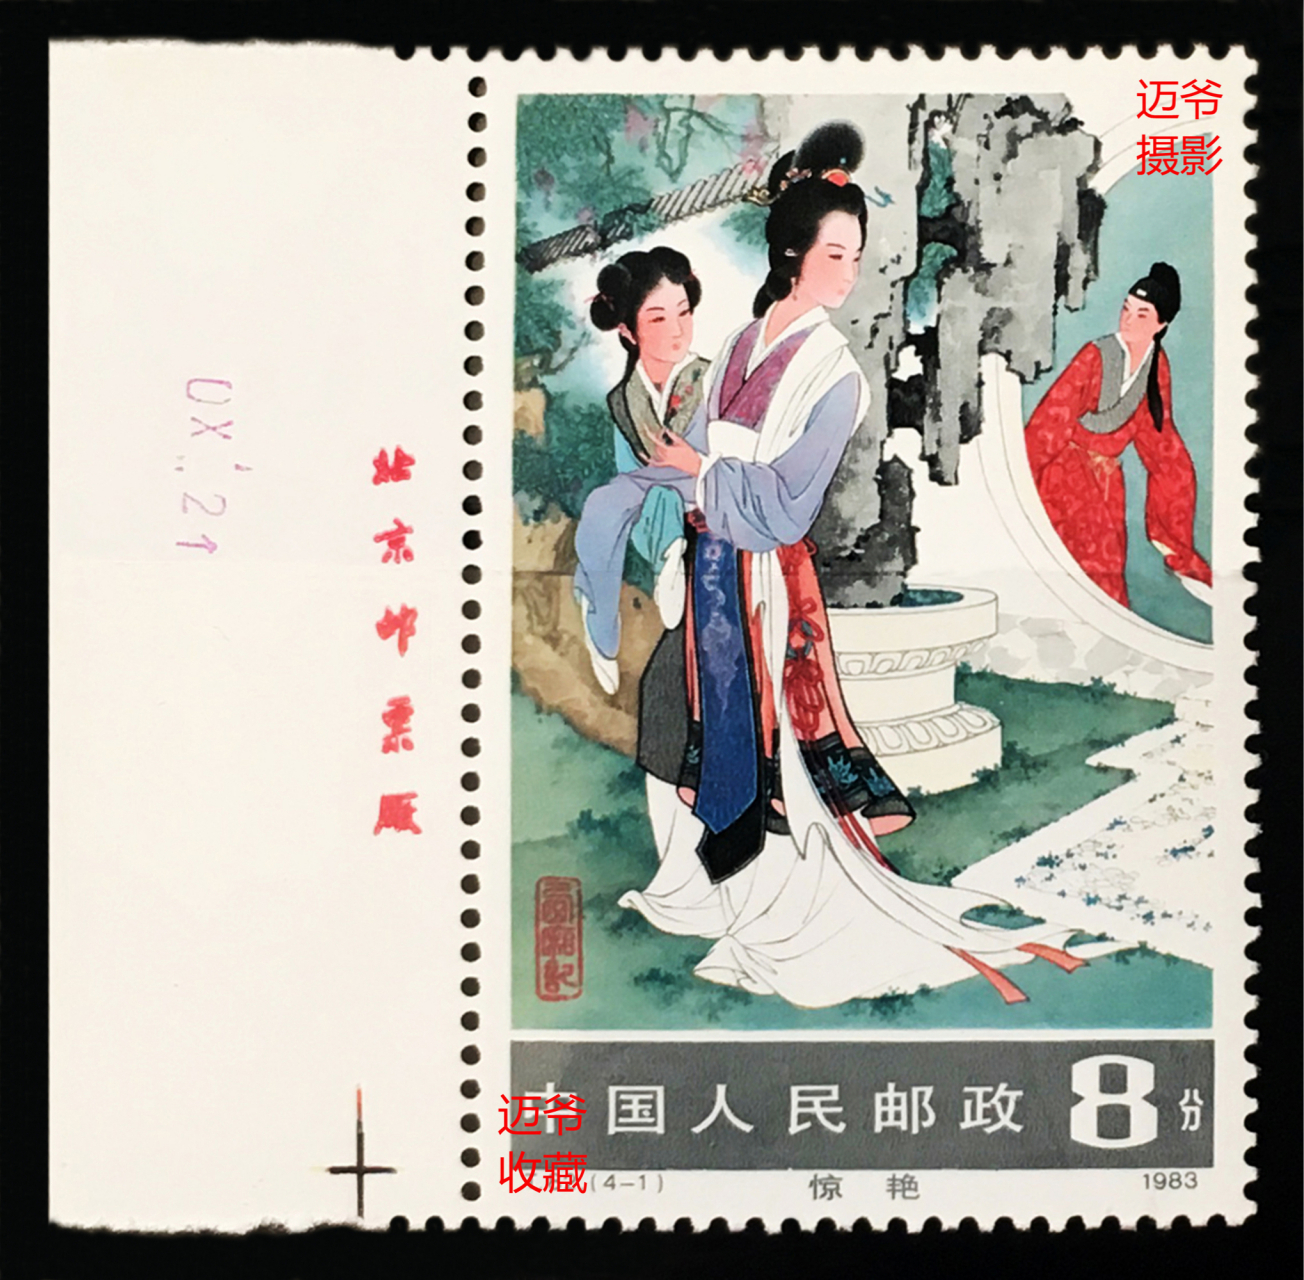 迈爷收藏日记(424)西厢记邮票 1983年2月21日邮电部发行《西厢记》